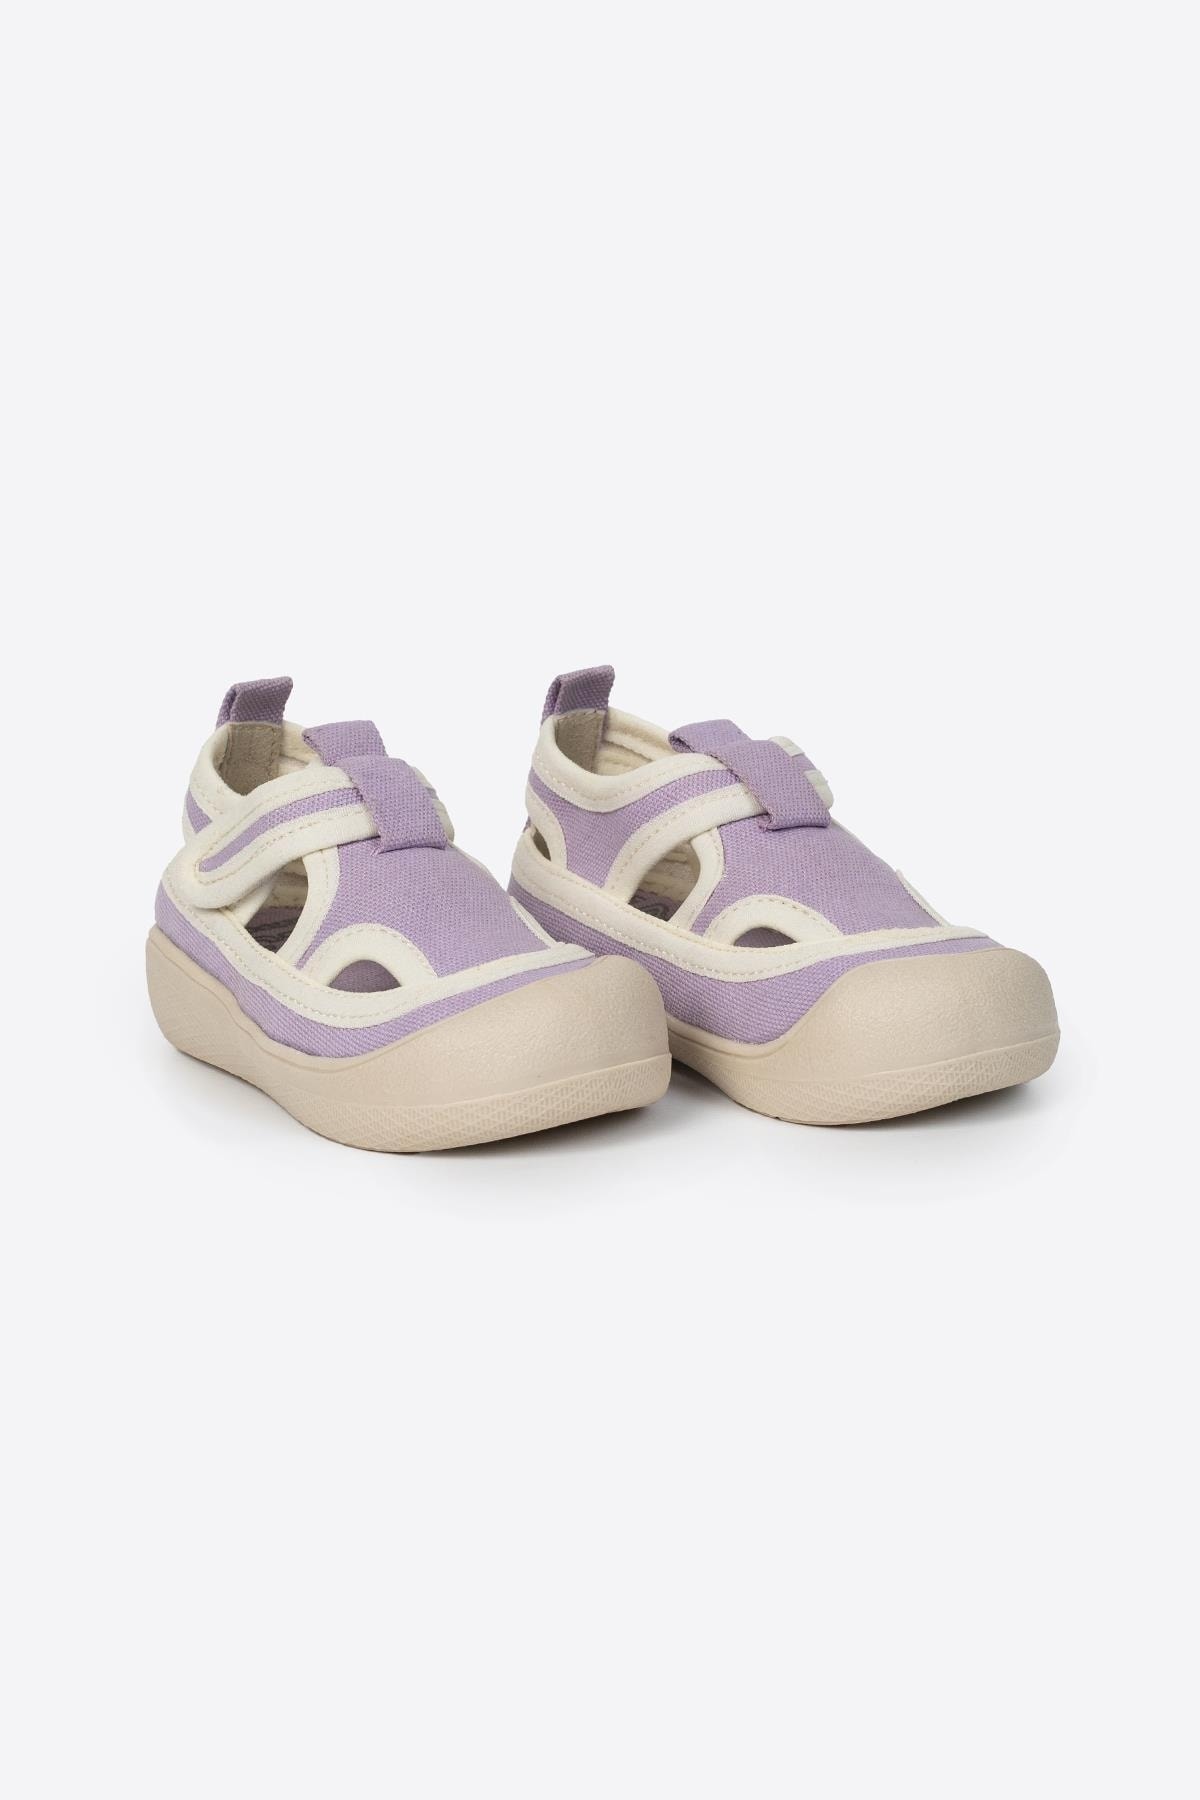 LETOON Lilac Kids Sandals